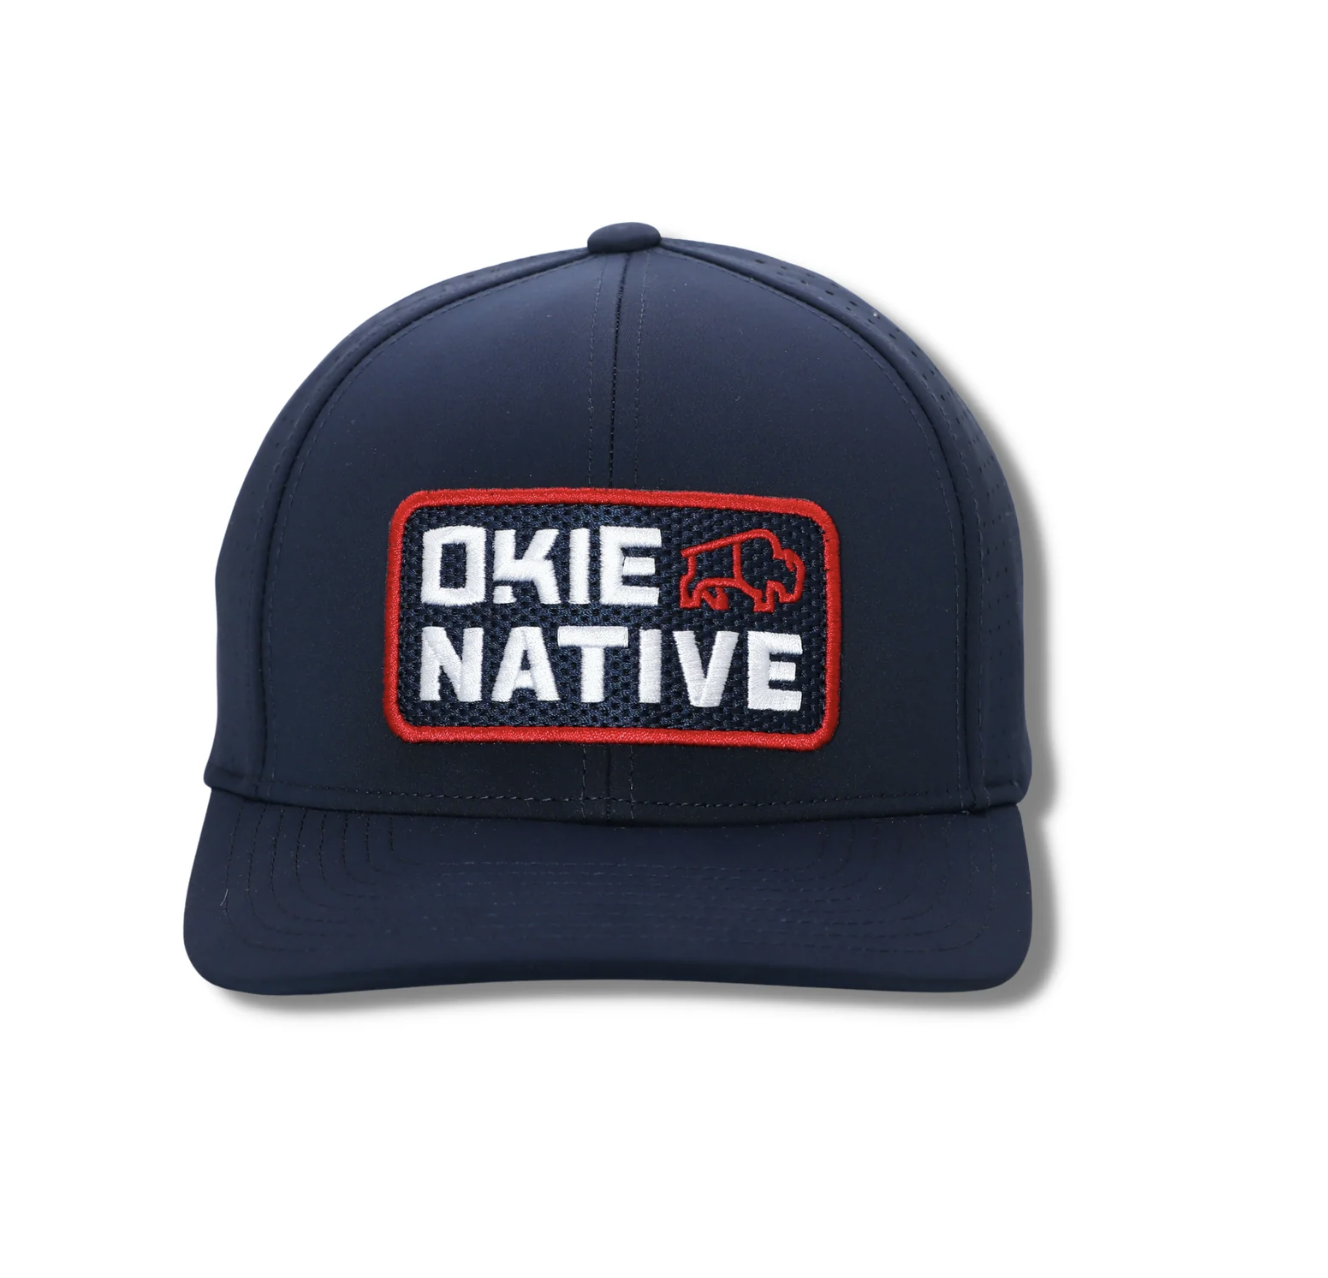 The Okie Brand The Okie Brand Okie Native Performance Navy Hat